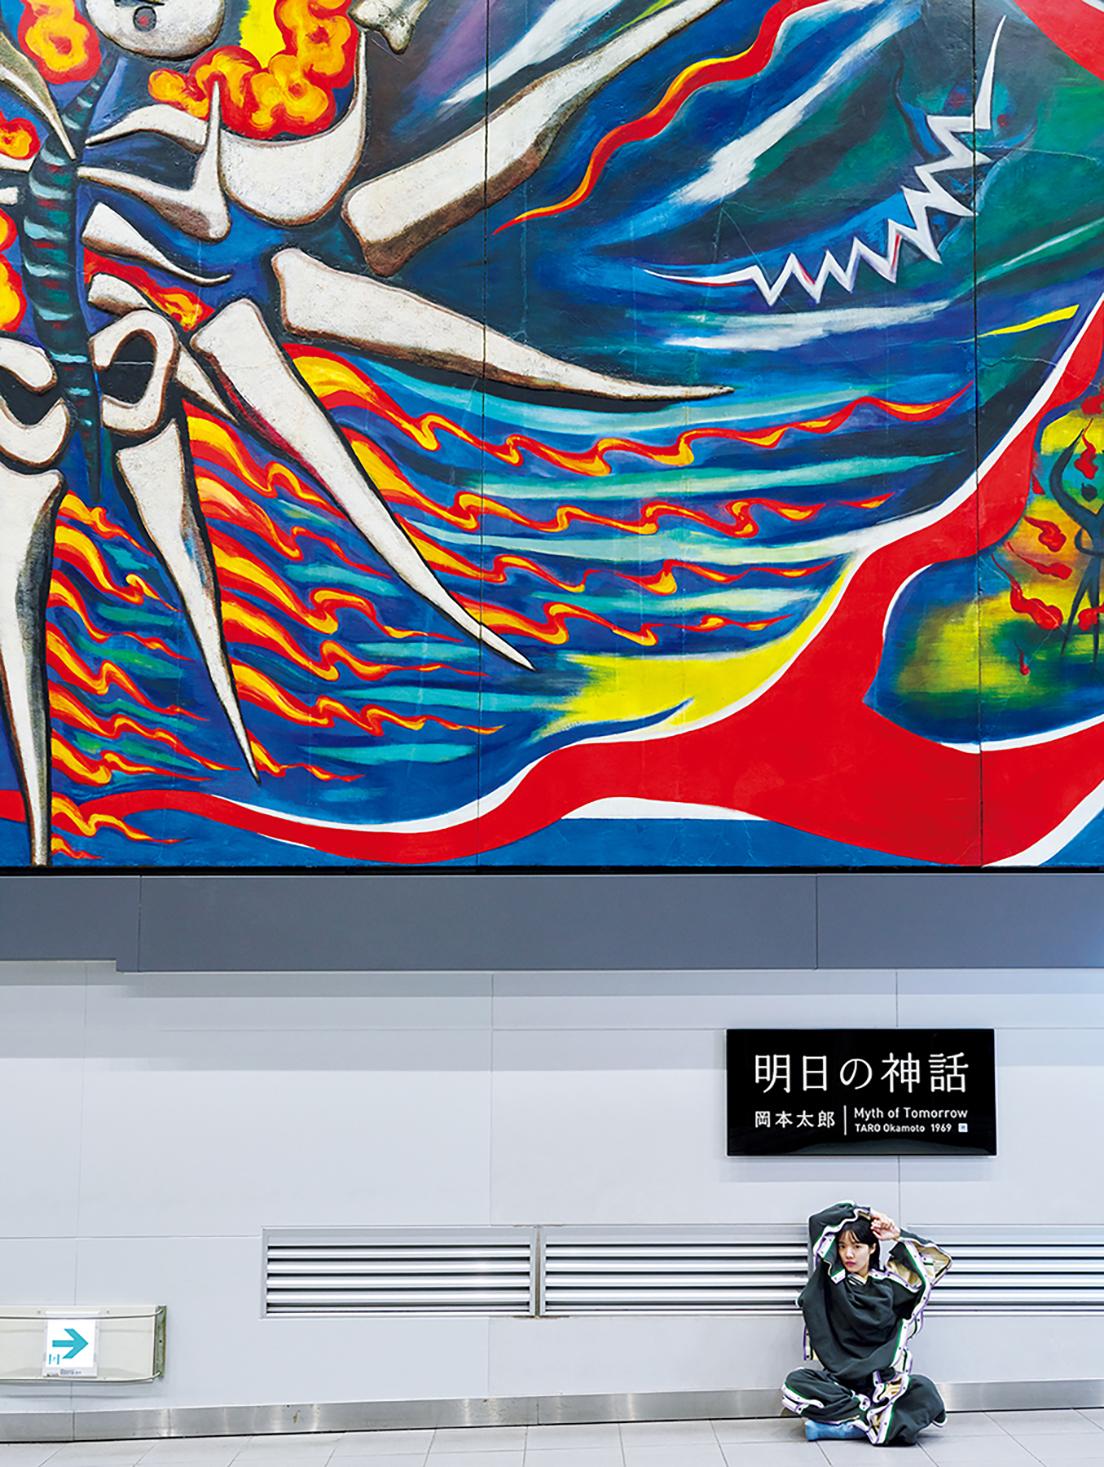 渋谷駅の巨大壁画《明日の神話》。